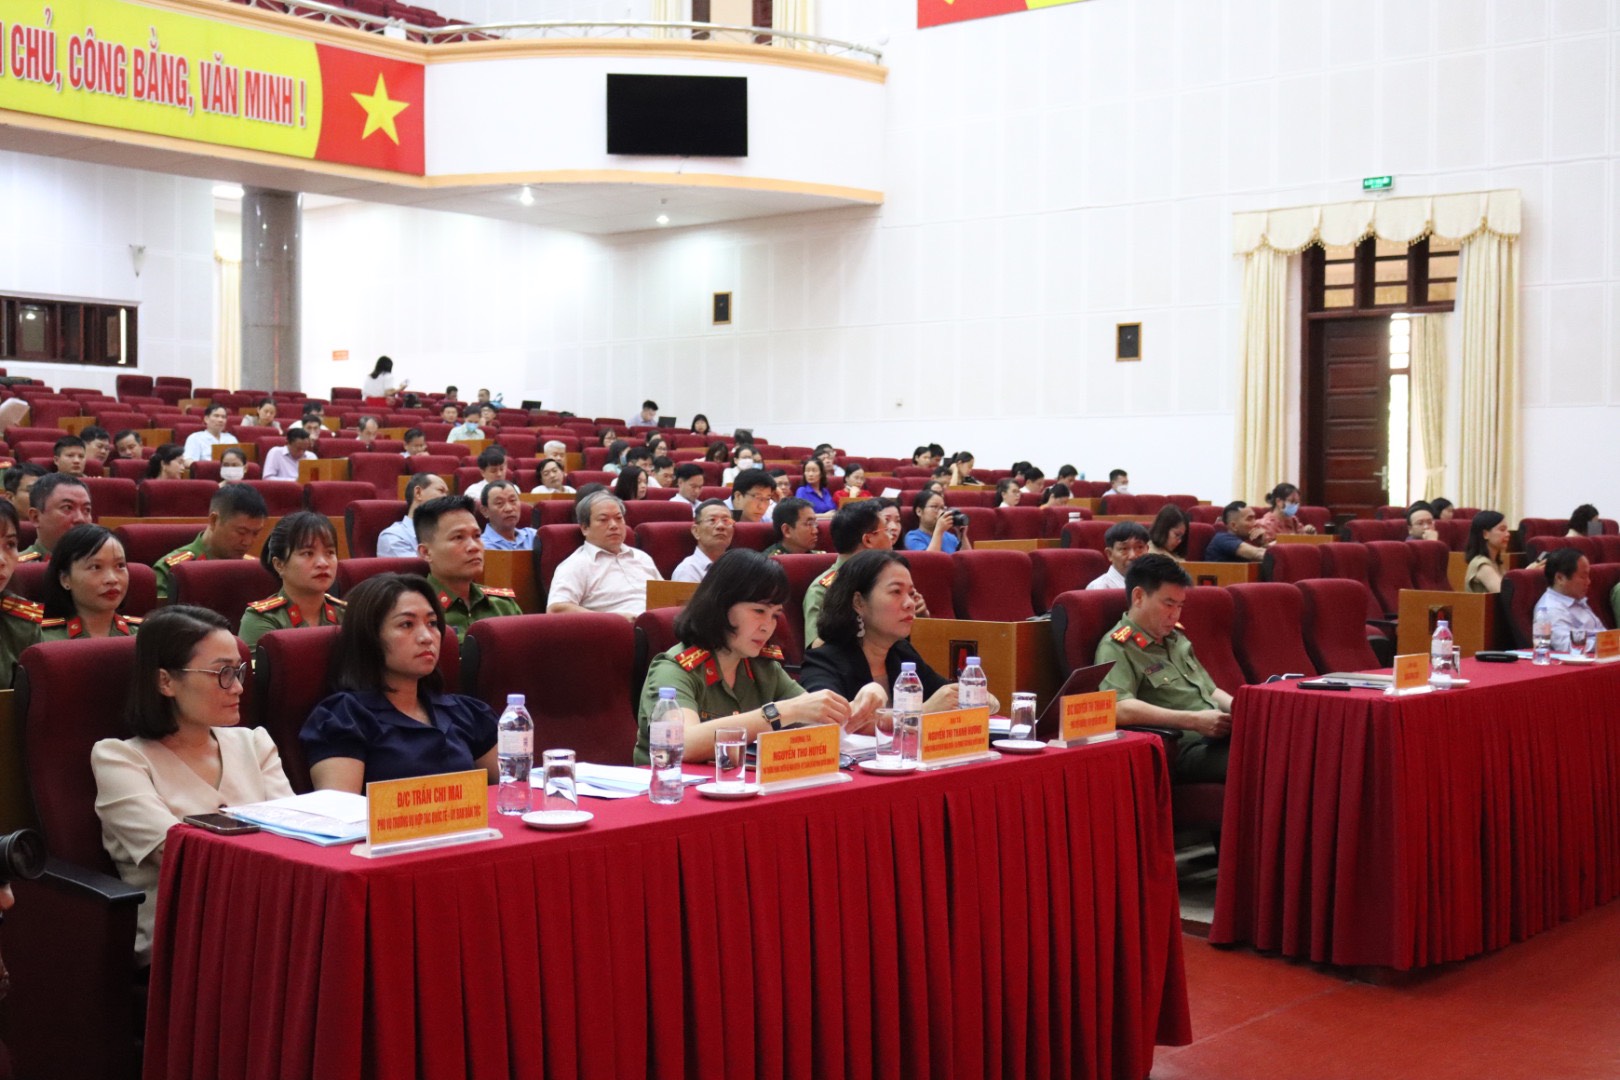 Hội nghị được kết nối với 114 điểm cầu cấp huyện và cấp xã tỉnh Lai Châu